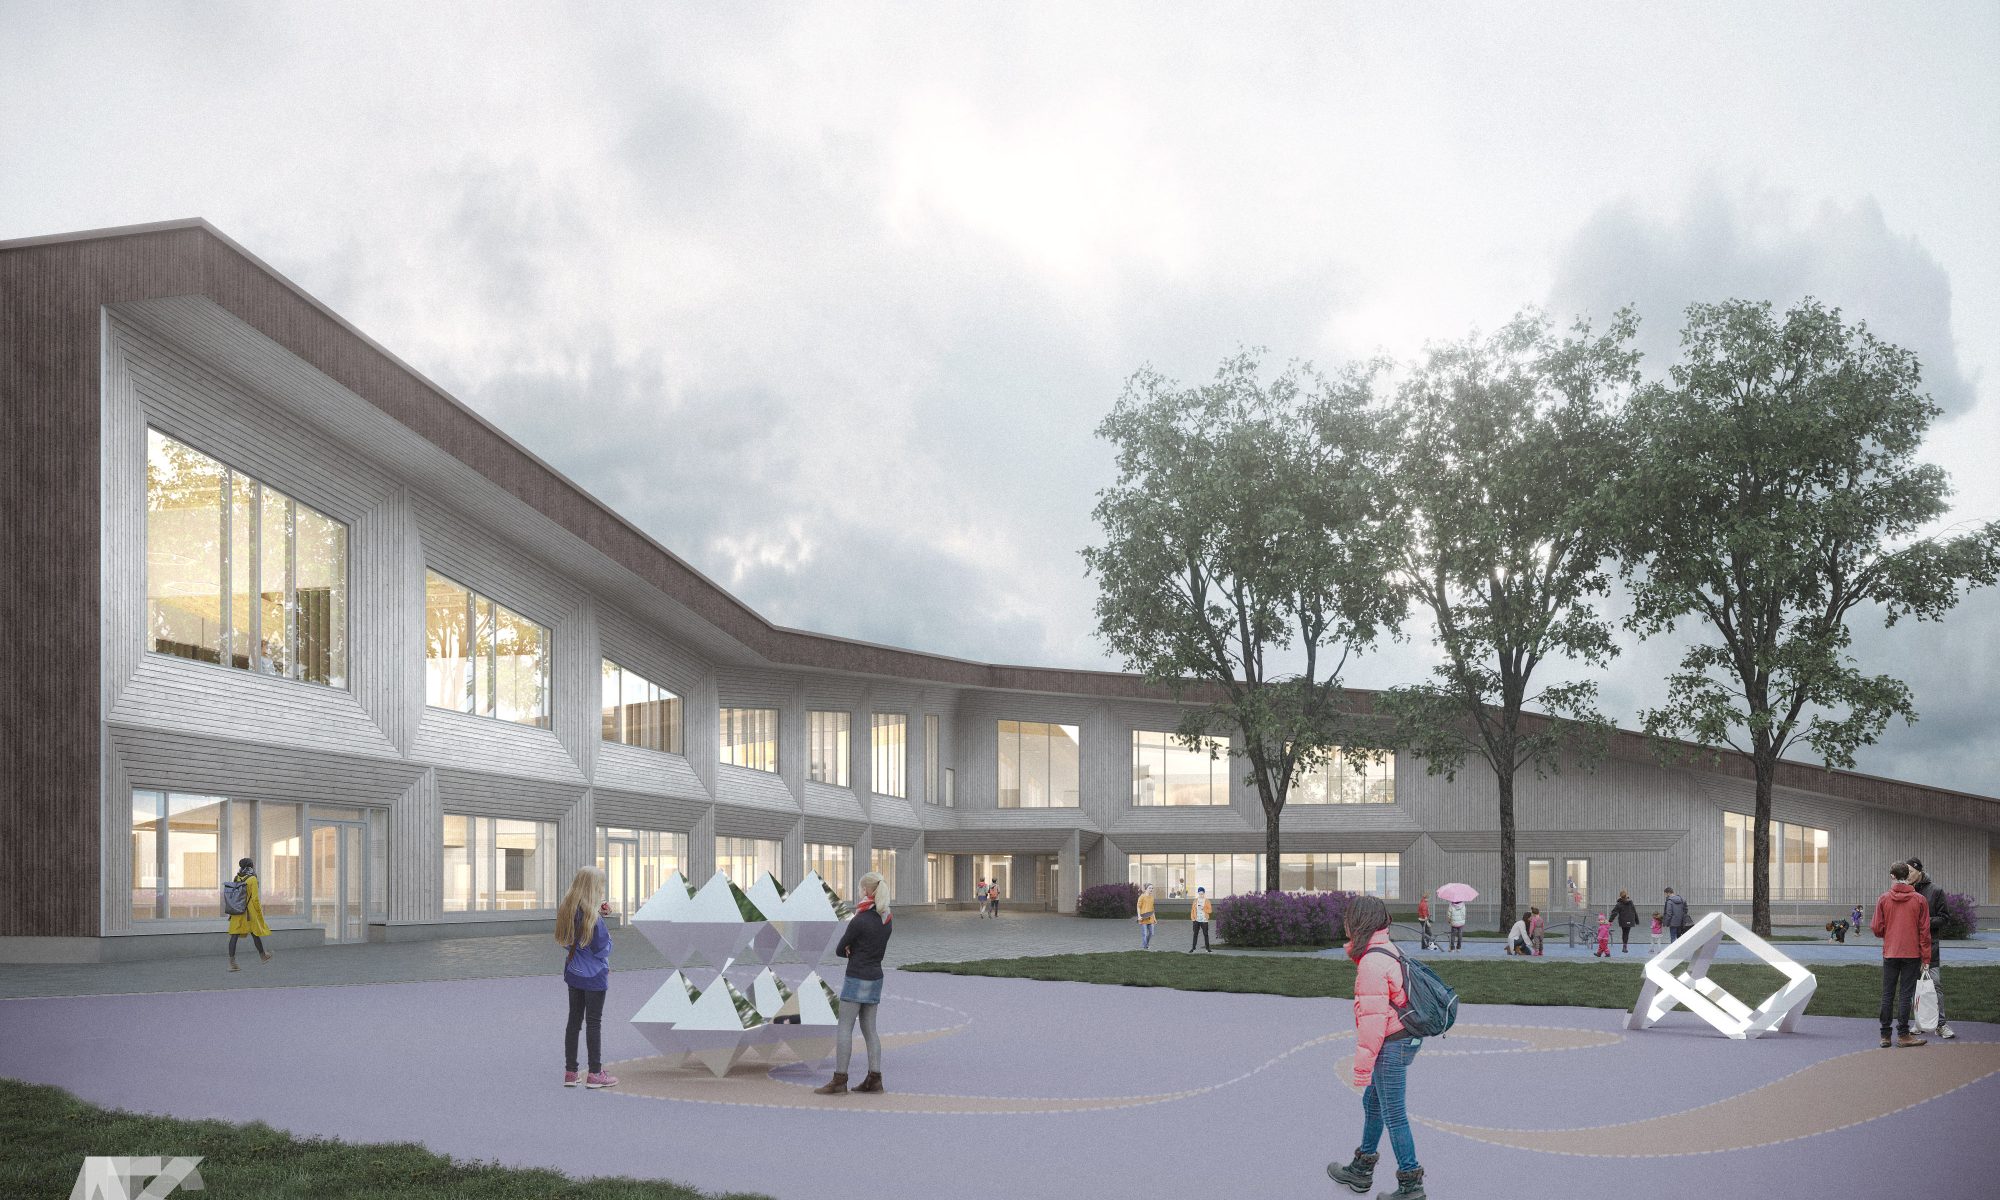 Suomalais-venäläiselle koululle rakennetaan uudisrakennus, joka tulee olemaan moderni puukoulu